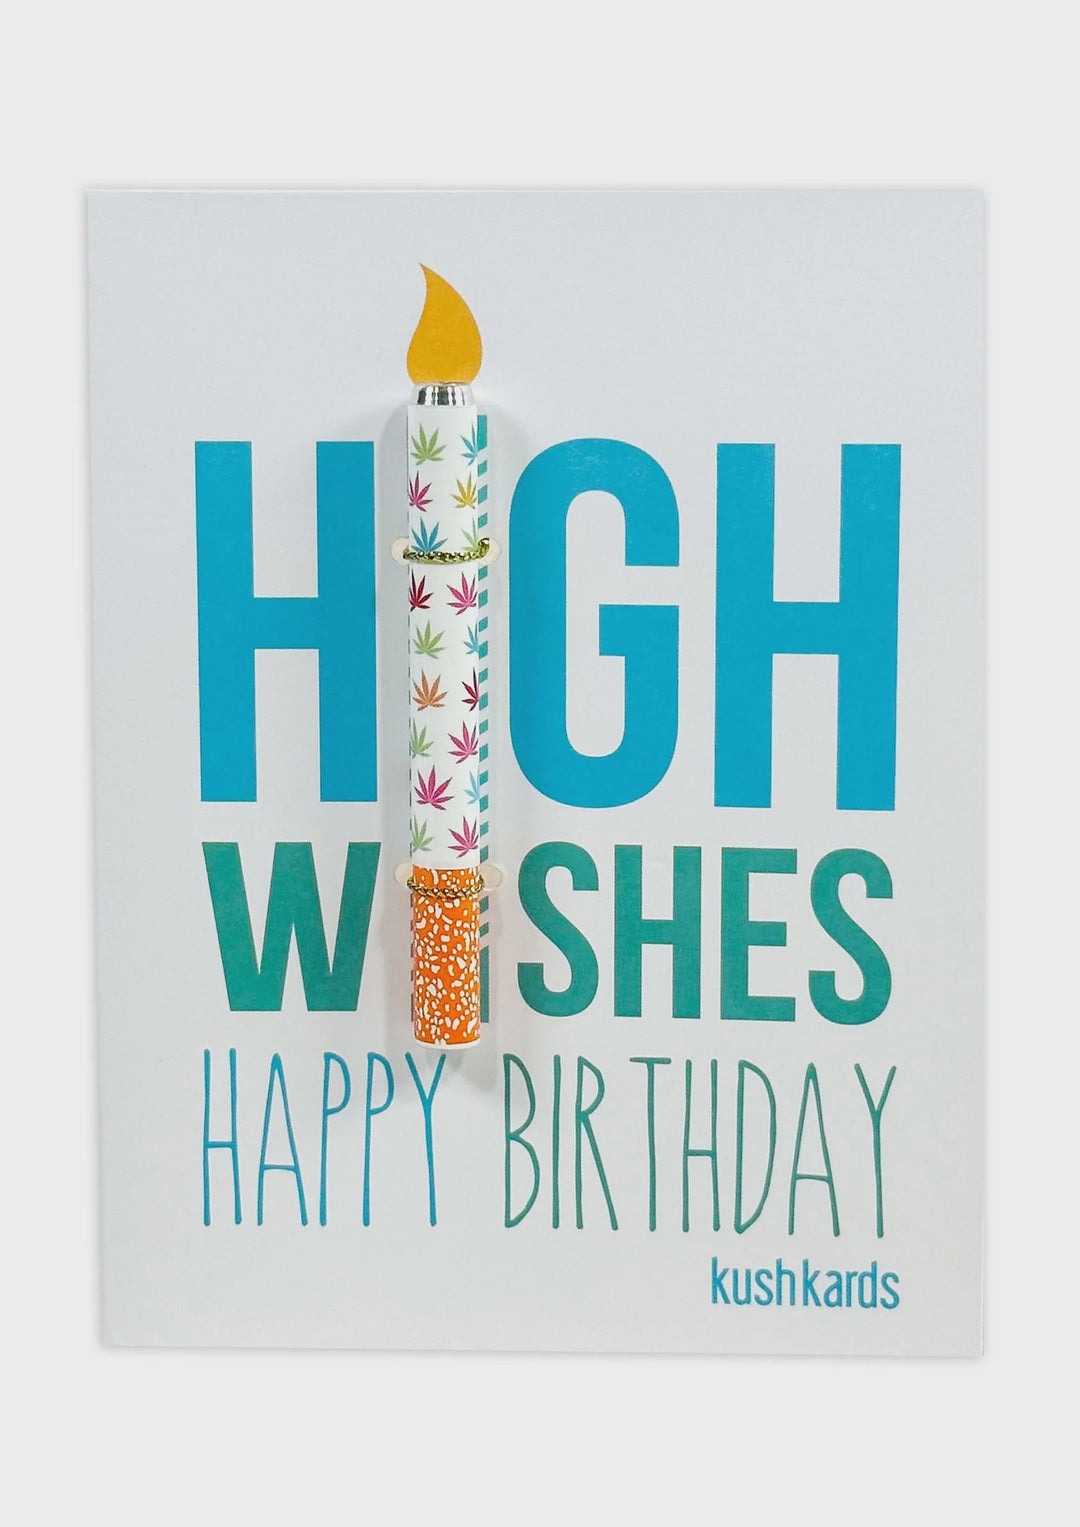 Kush Kards - High Wishes Birthday Greeting Card